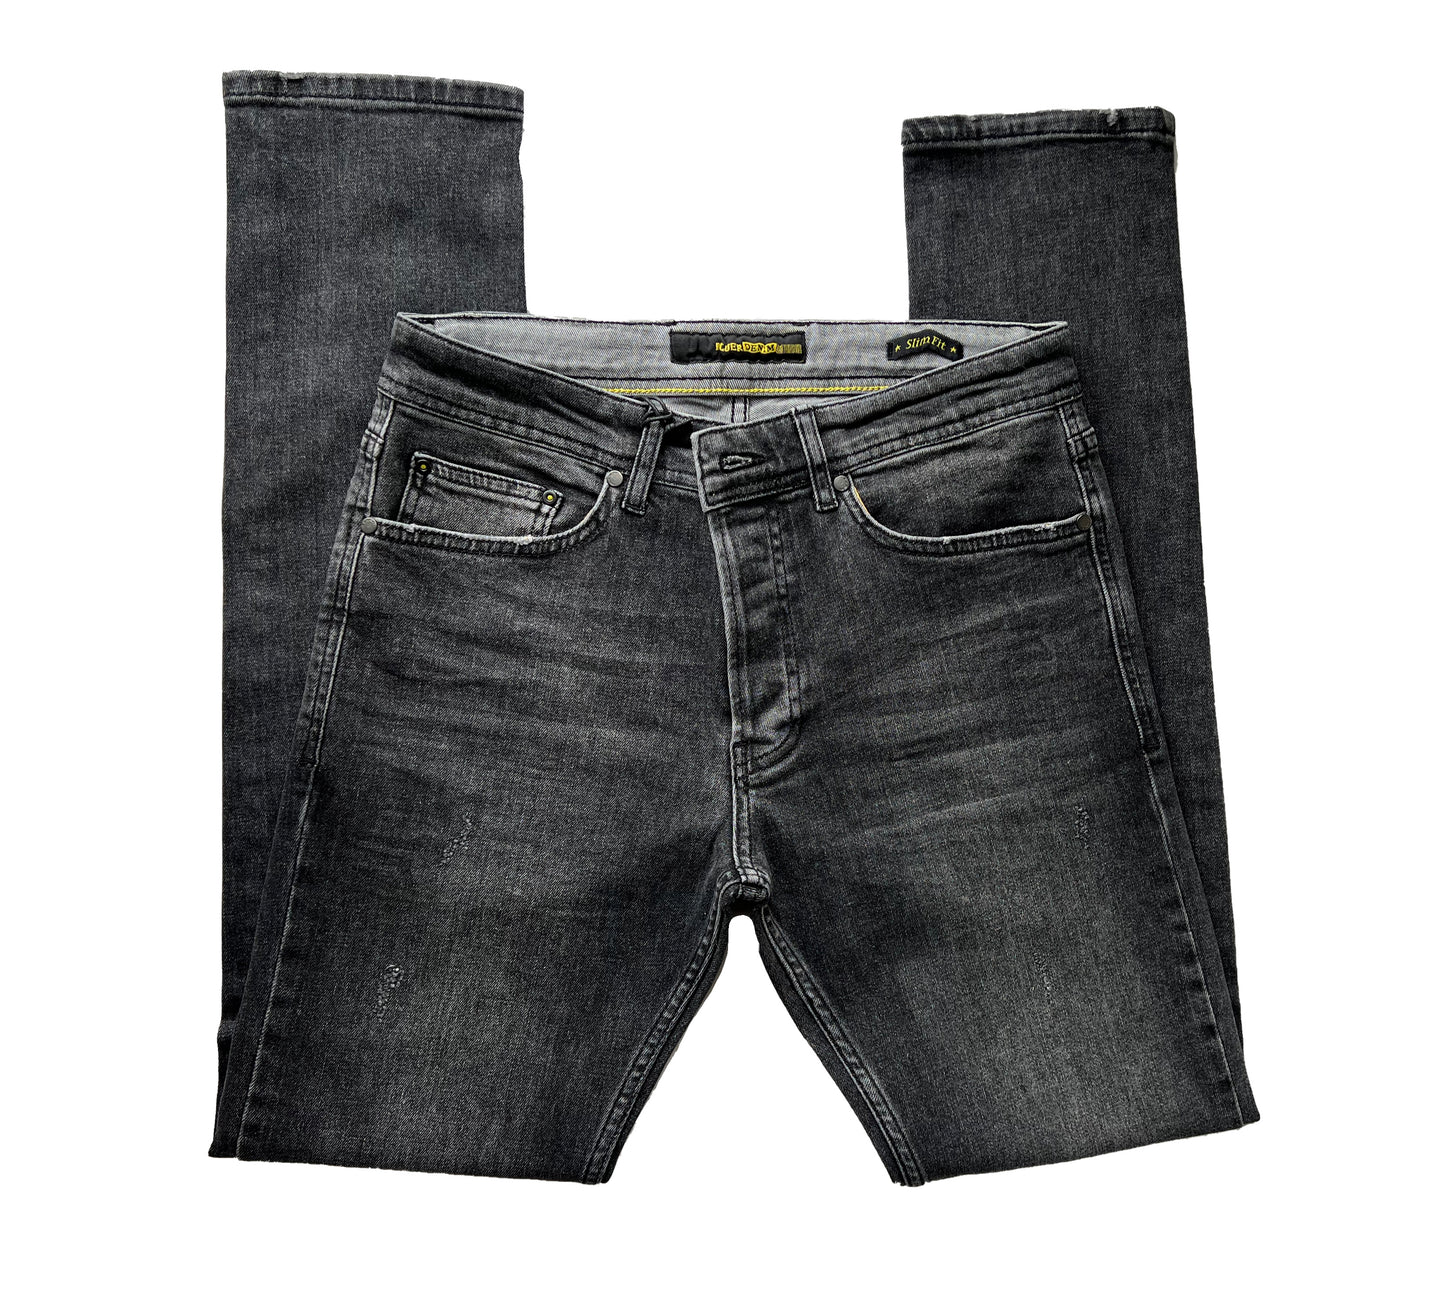 Jeans et pantalons confortables coupe ajustée pour hommes - York 